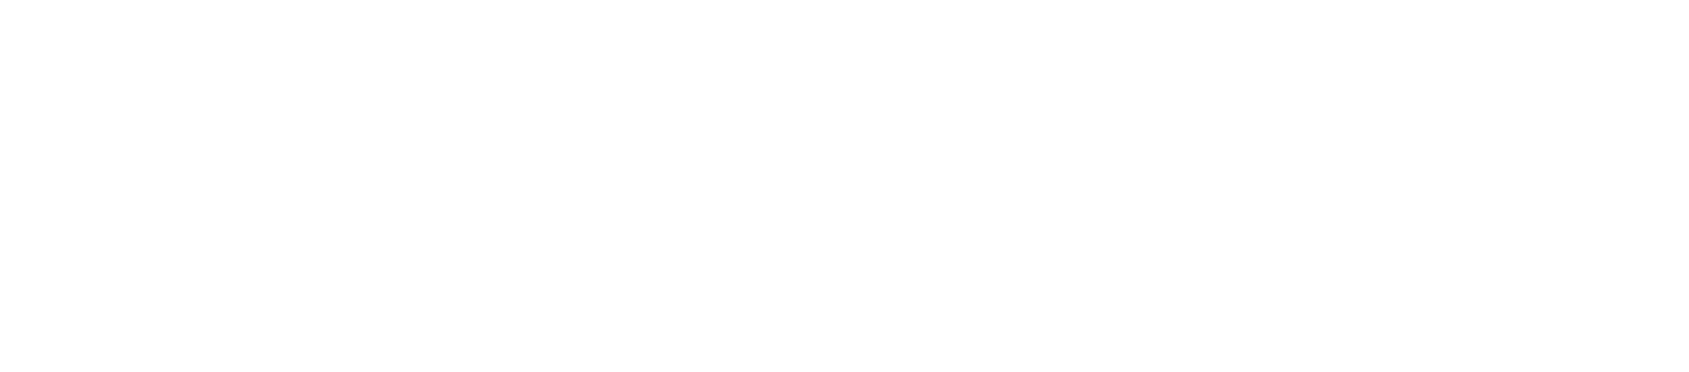 MONday Apart Premium Hamamatsucho